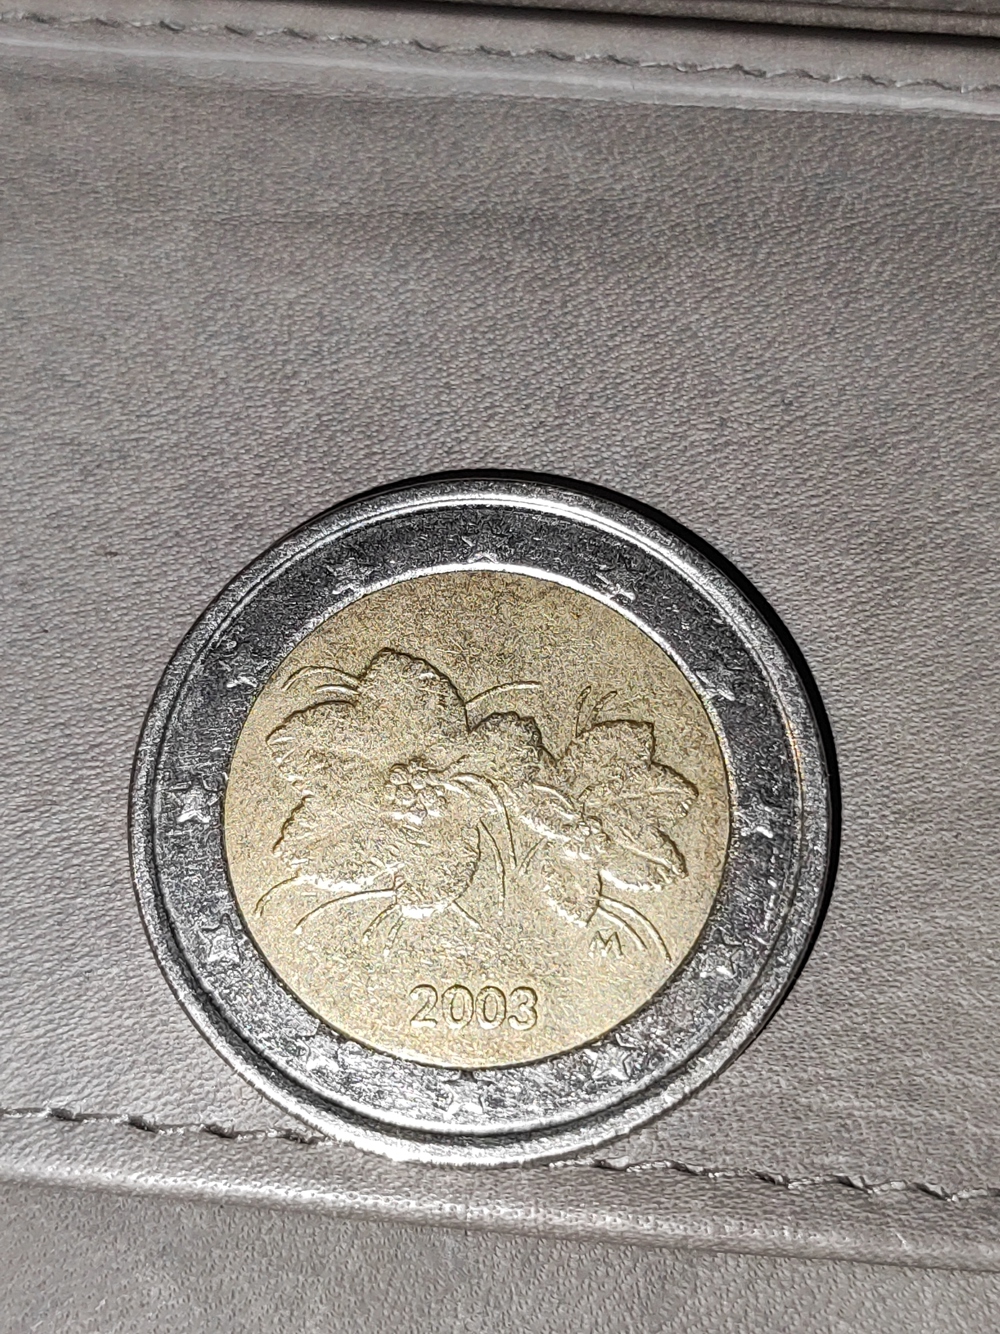 2 Euro Münze aus 2003